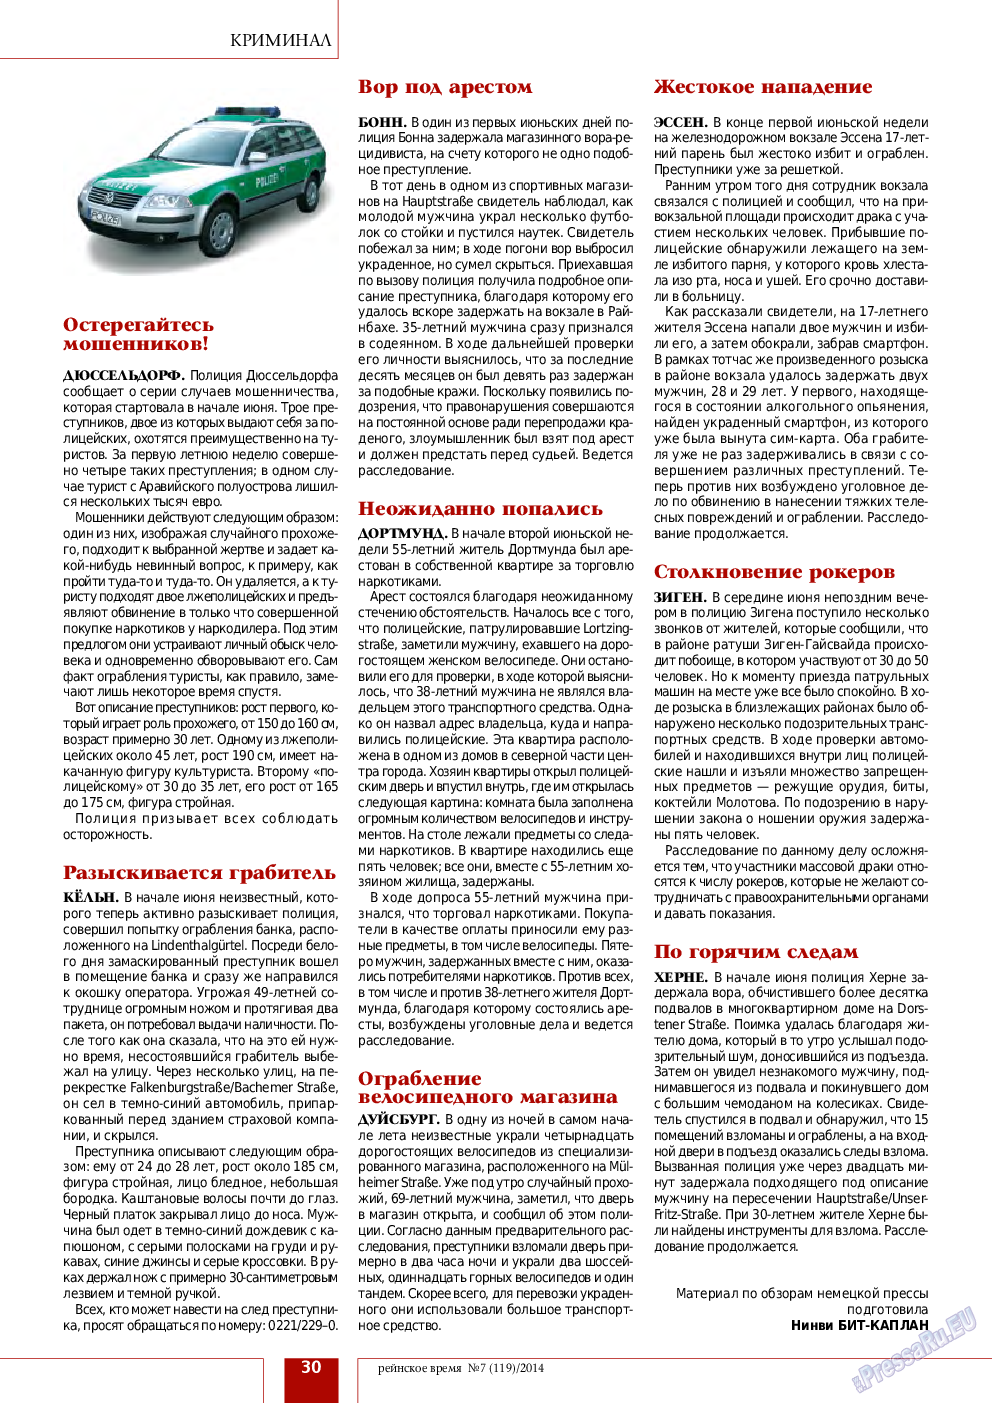 Рейнское время, журнал. 2014 №7 стр.30